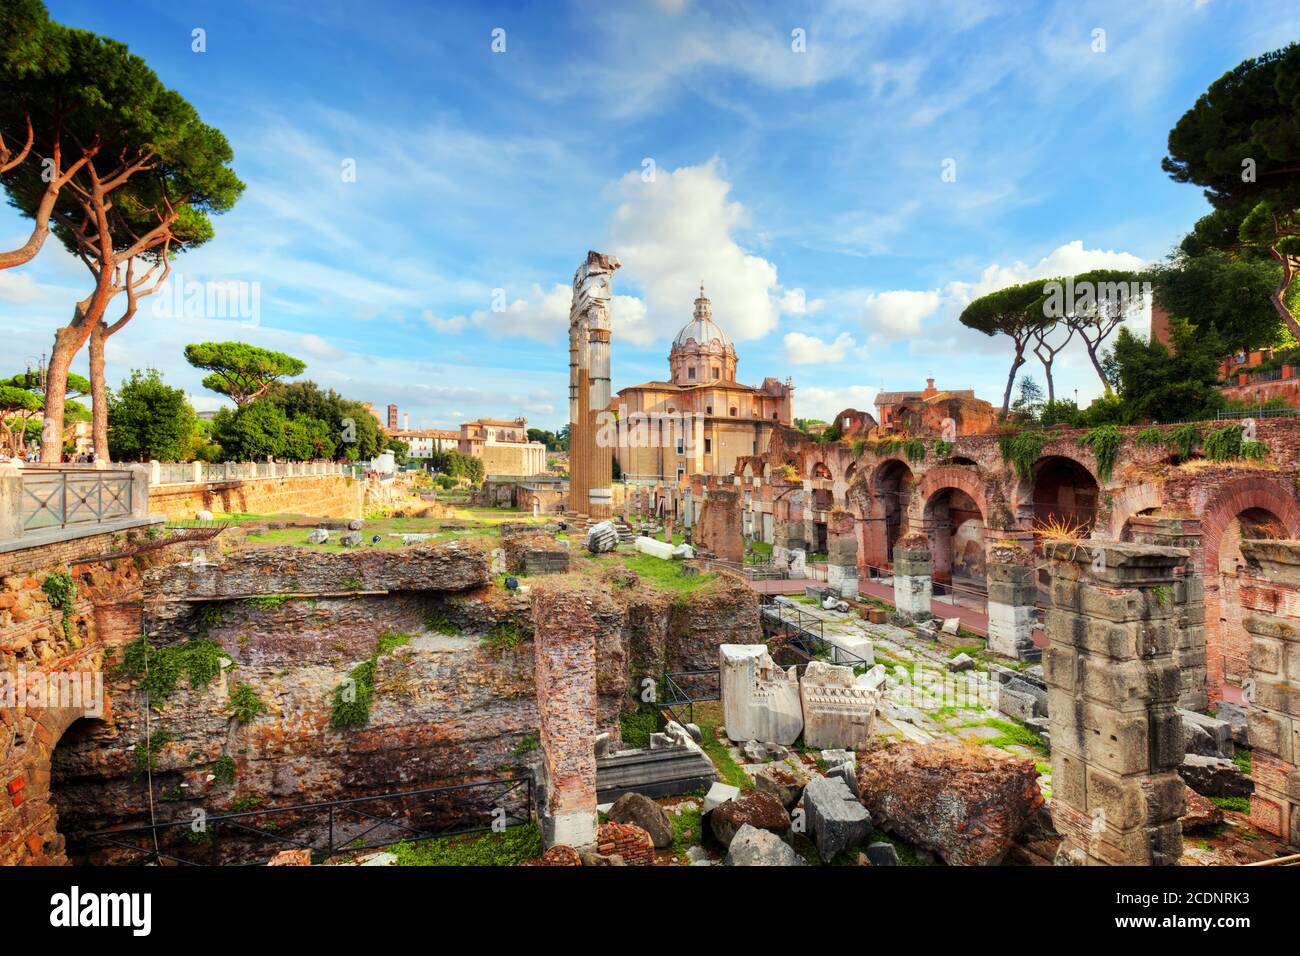 The Roman Forum, Italian Foro Romano in Rome, Italy Stock Photo